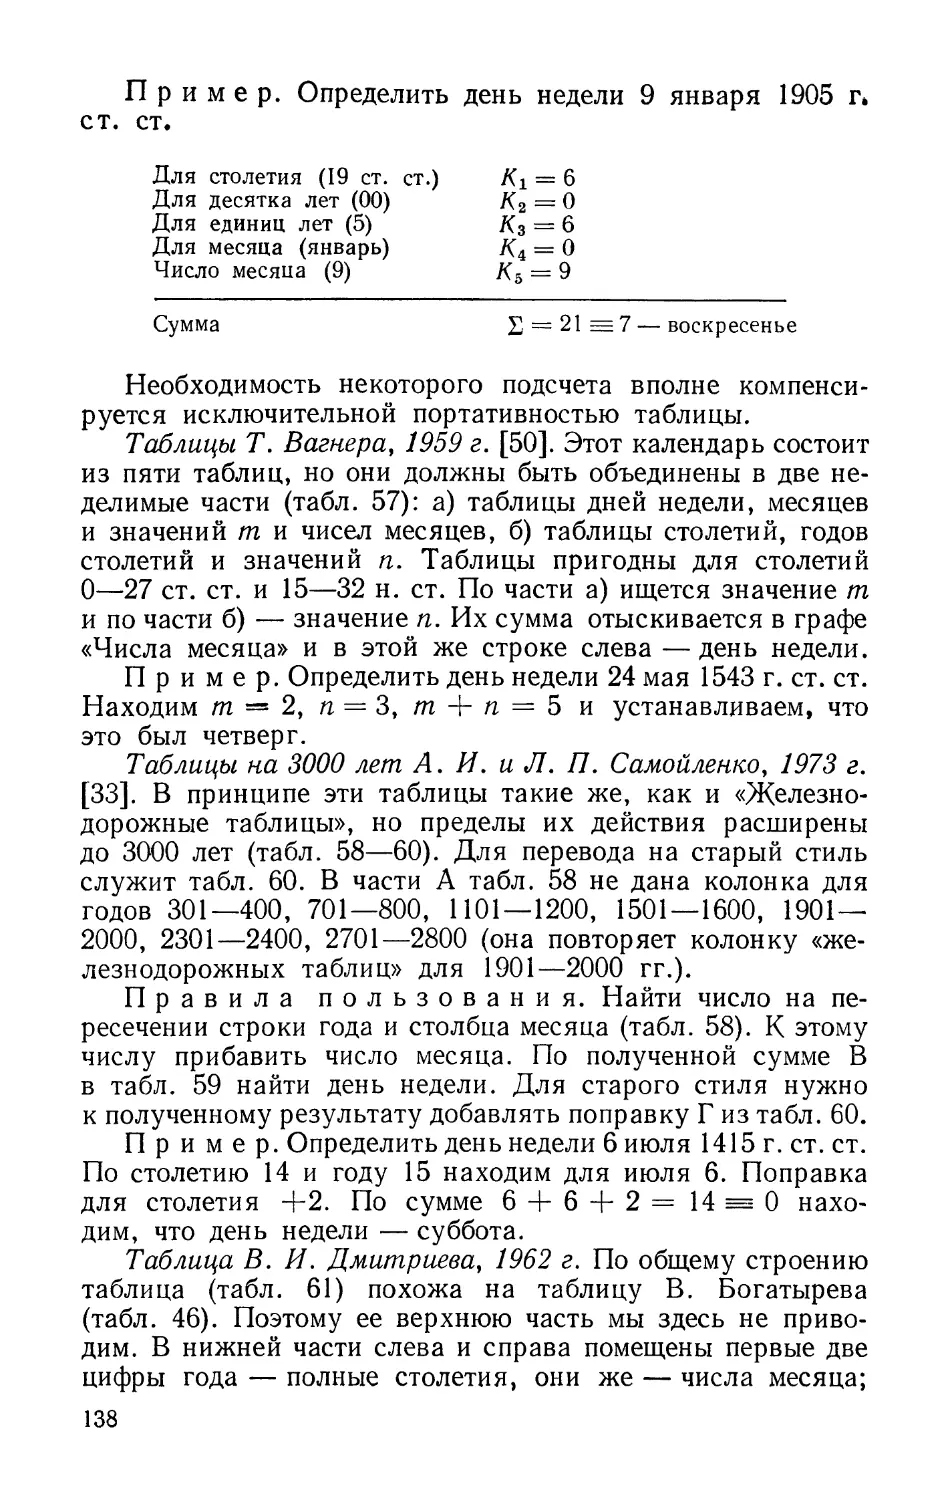 Таблицы Т. Вагнера, 1959 г.
Таблицы на 3000 лет А. И. и Л. П. Самойленко, 1973 г.
Таблица В. И. Дмитриева, 1962 г.